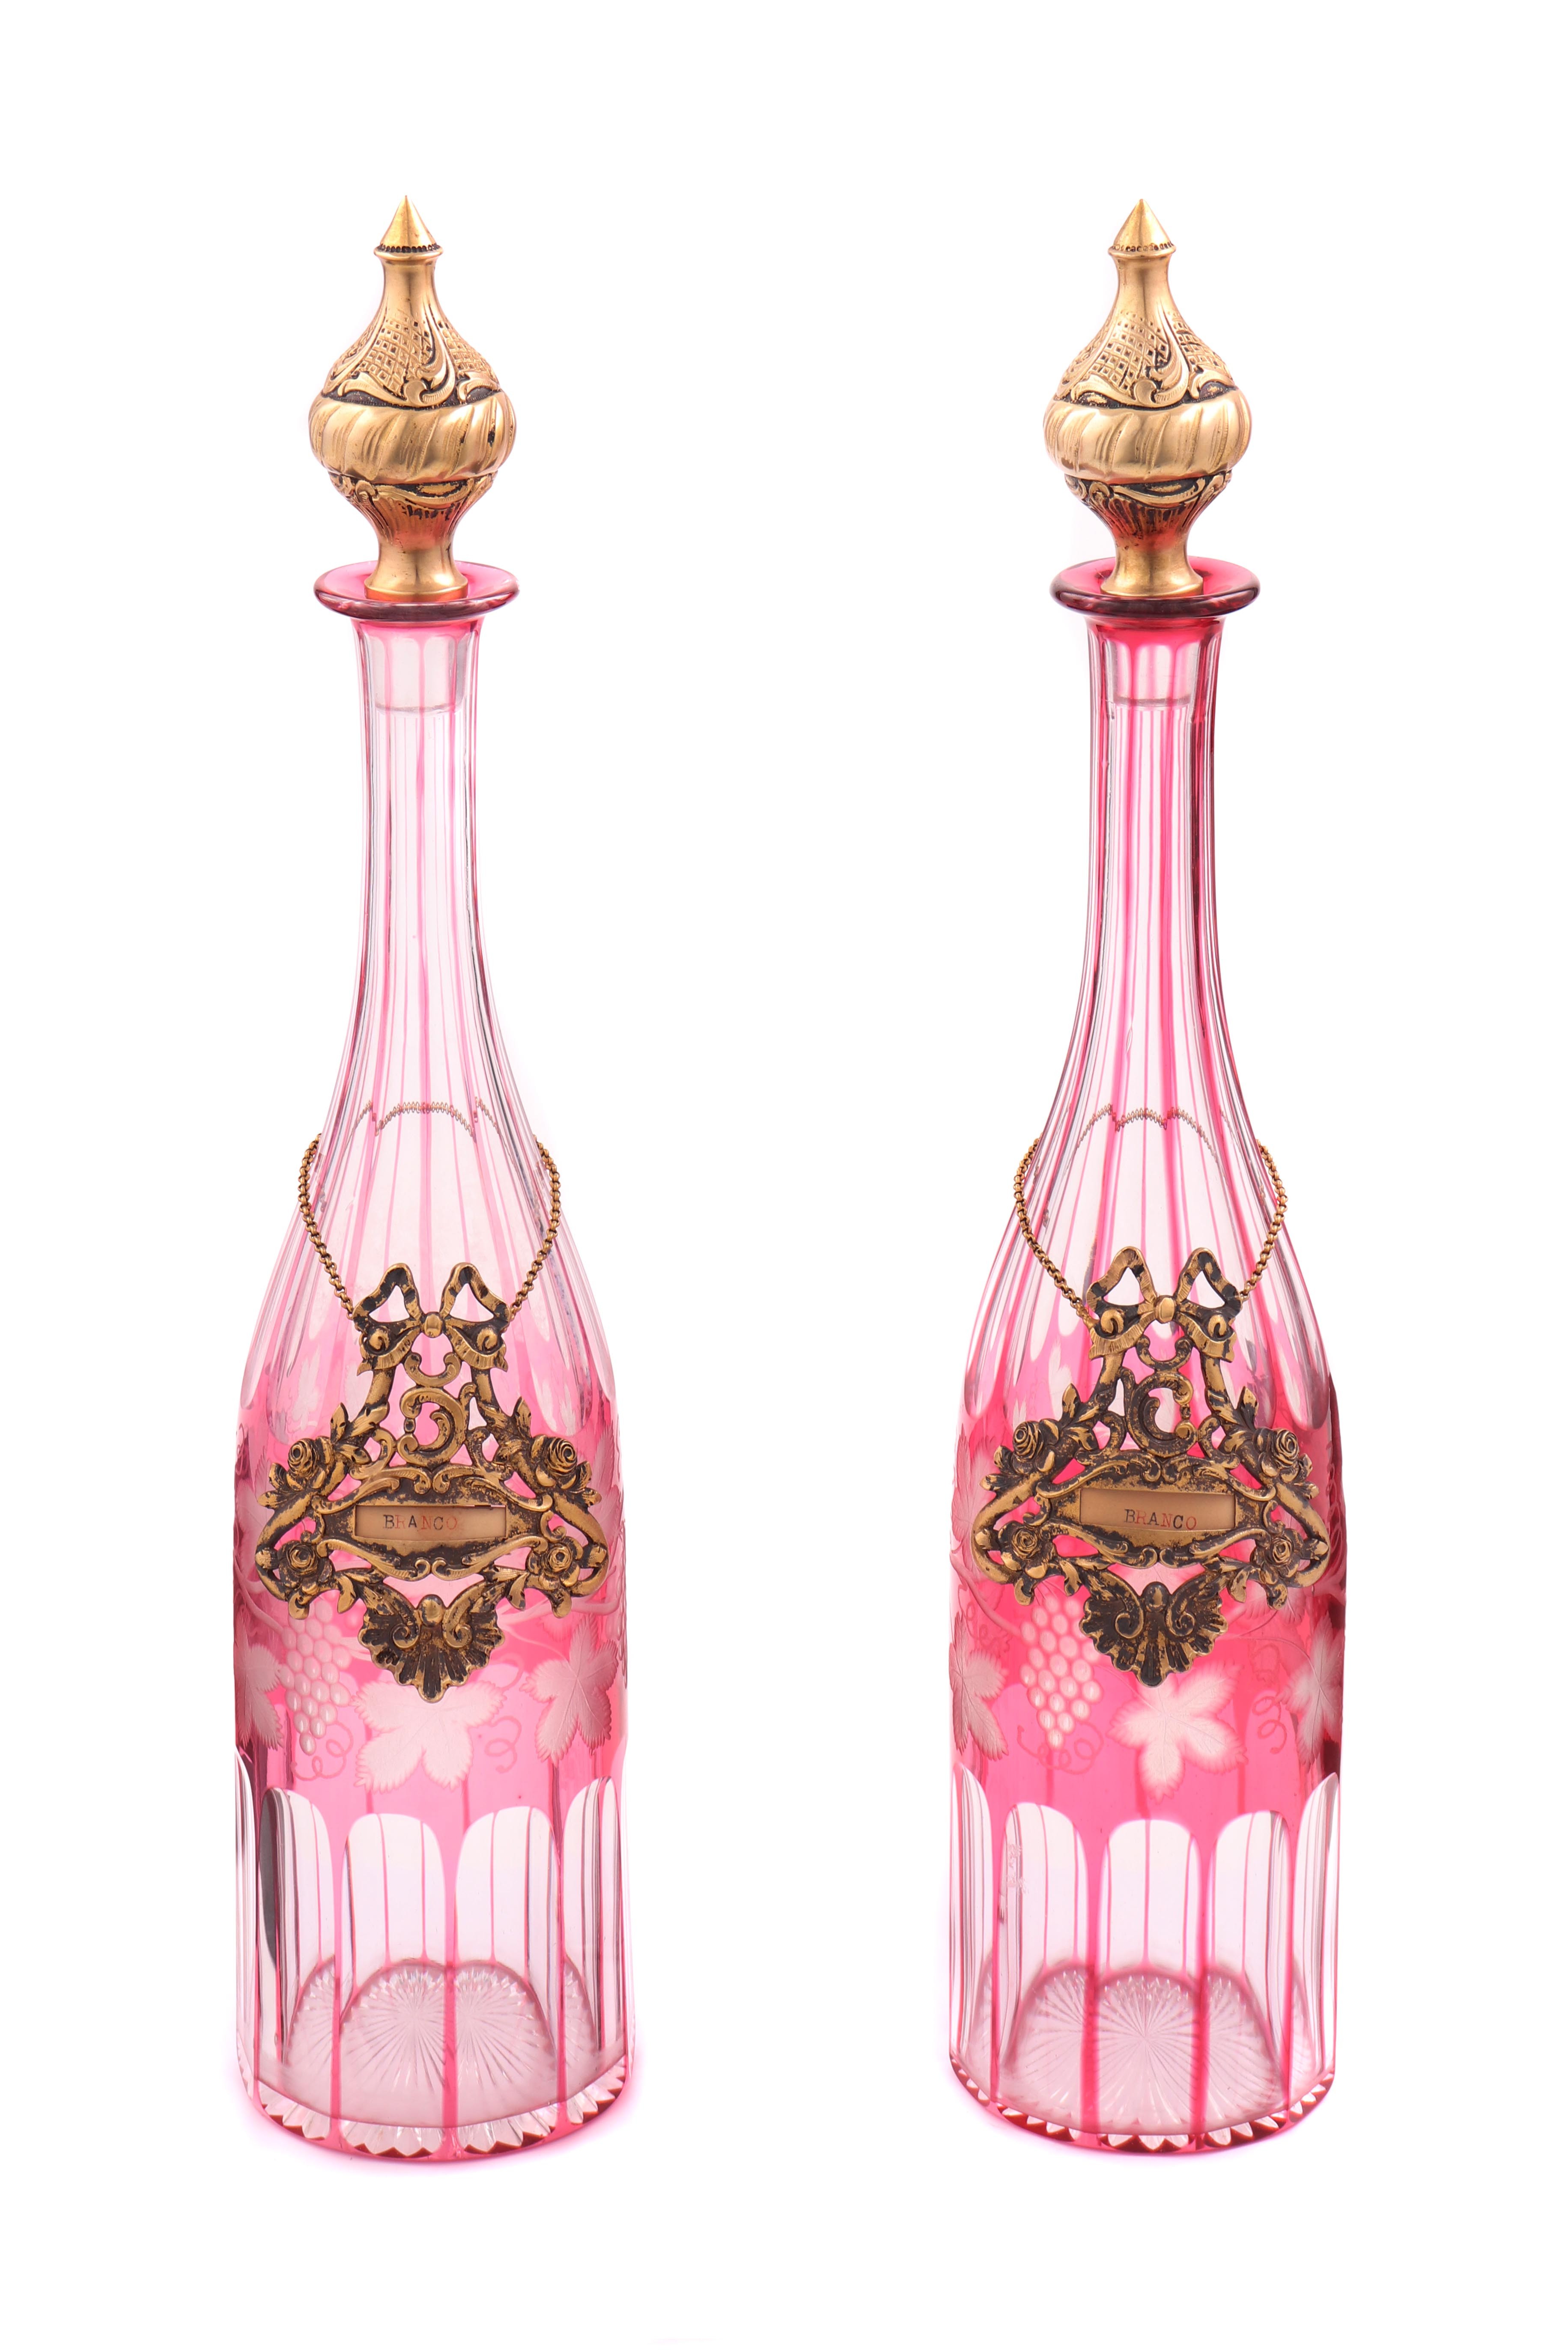 Par de garrafas em cristal doublê com montagens em prata dourada portuguesa (2)